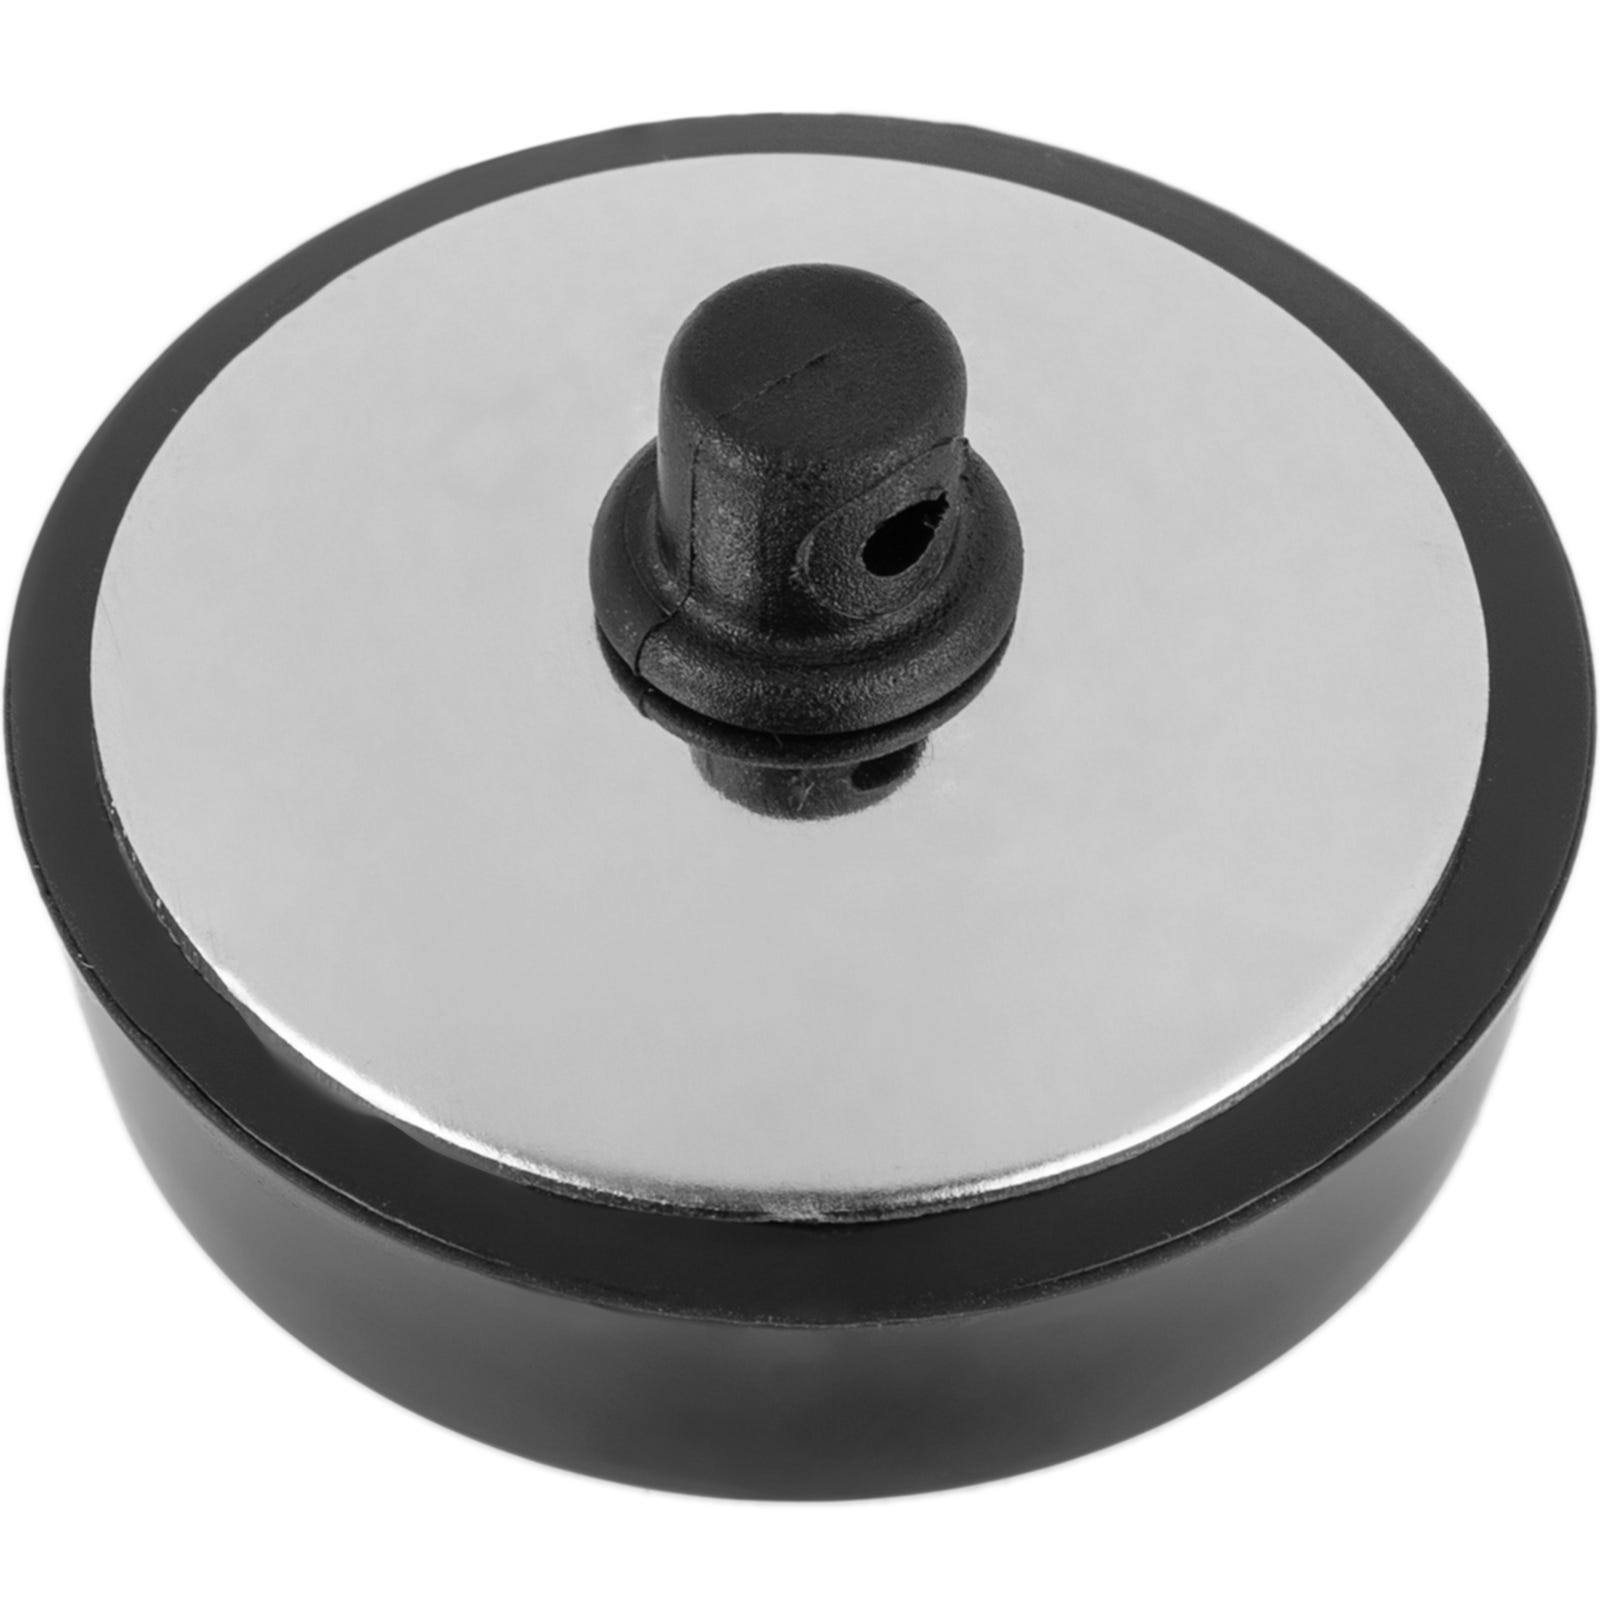 Tapón de goma para válvulas de cocina o lavabo de 44 mm